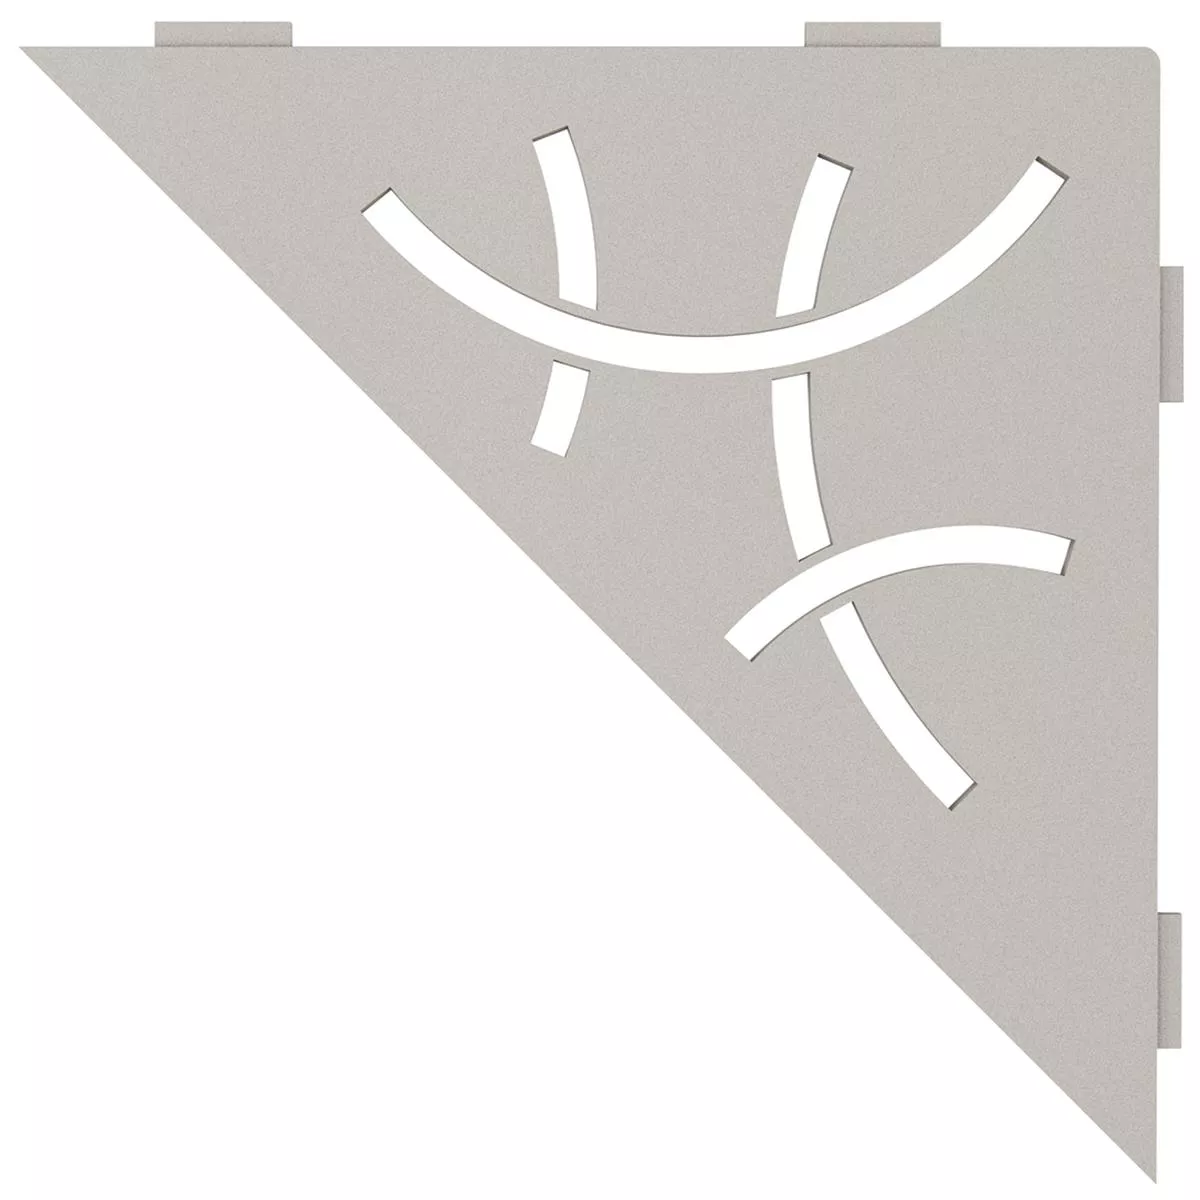 Schlüter mensola da parete triangolare 21x21 cm curva beige grigio